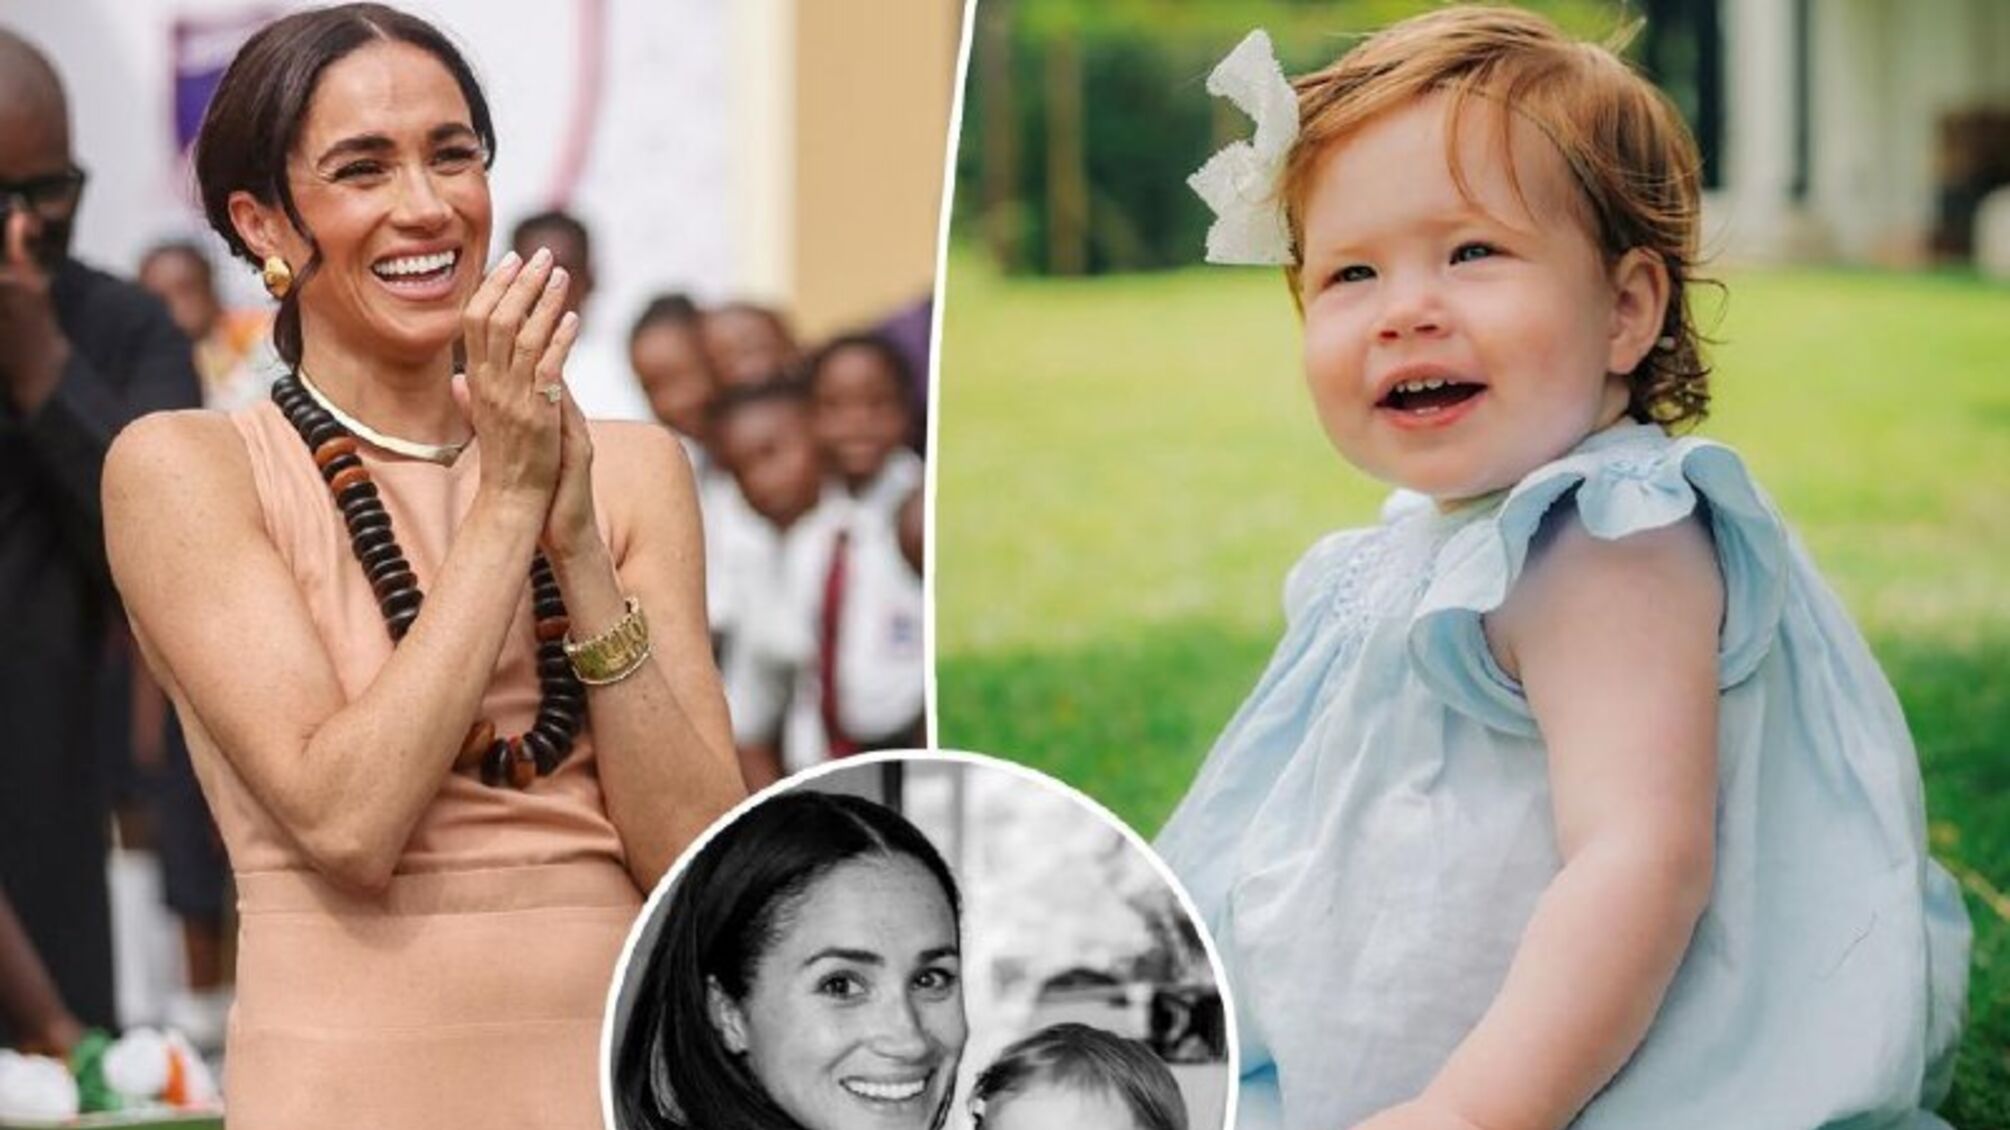 'Улюблене заняття': Меган Маркл розповіла, що її дочка принцеса Лілібет обожнює танцювати